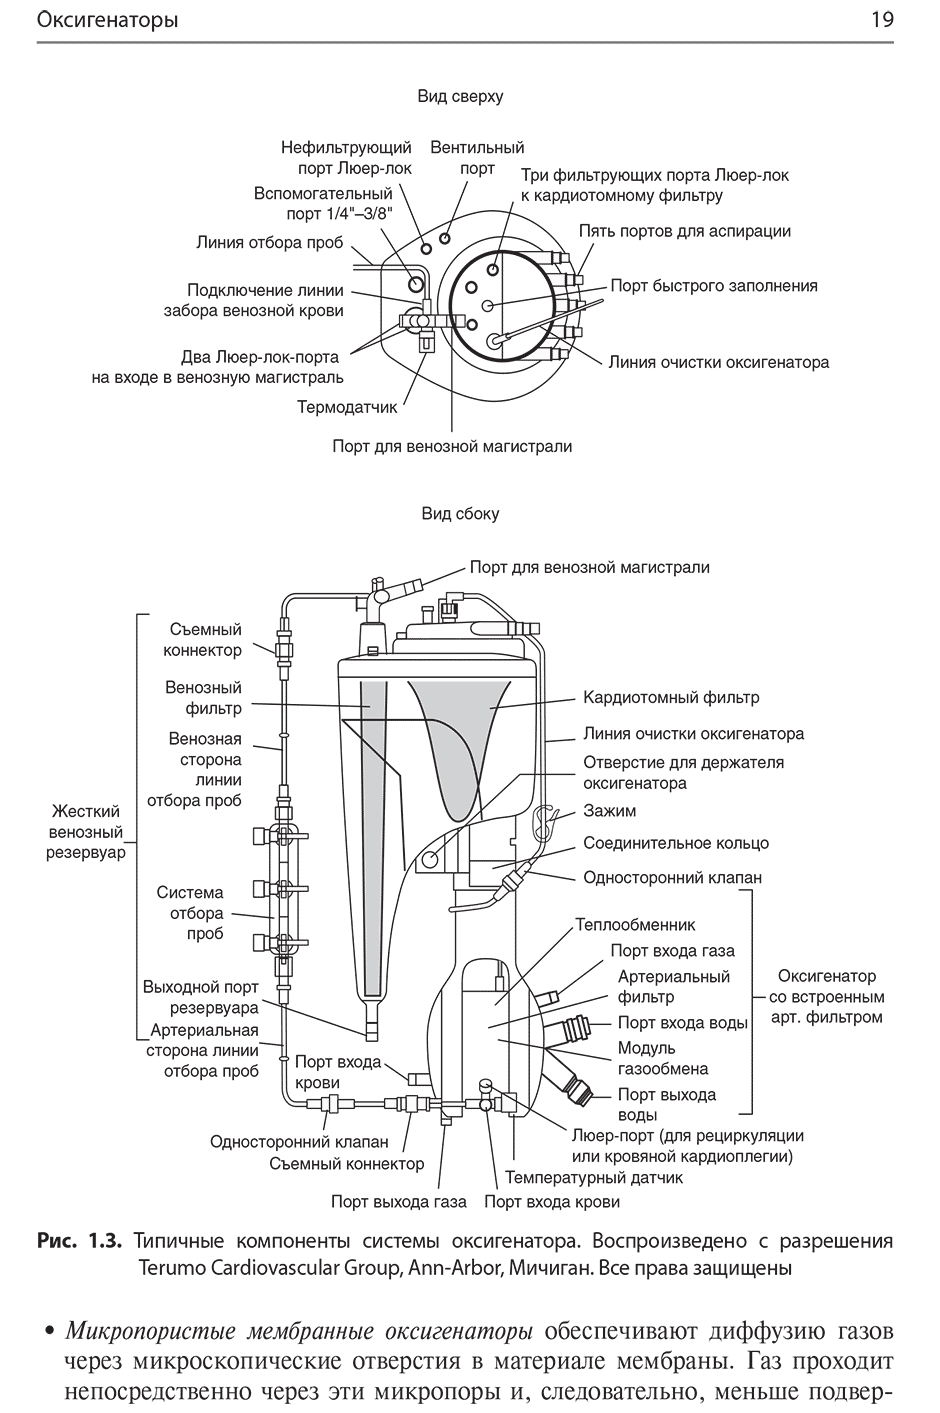 Рис. 1.3. Типичные компоненты системы оксигенатора.